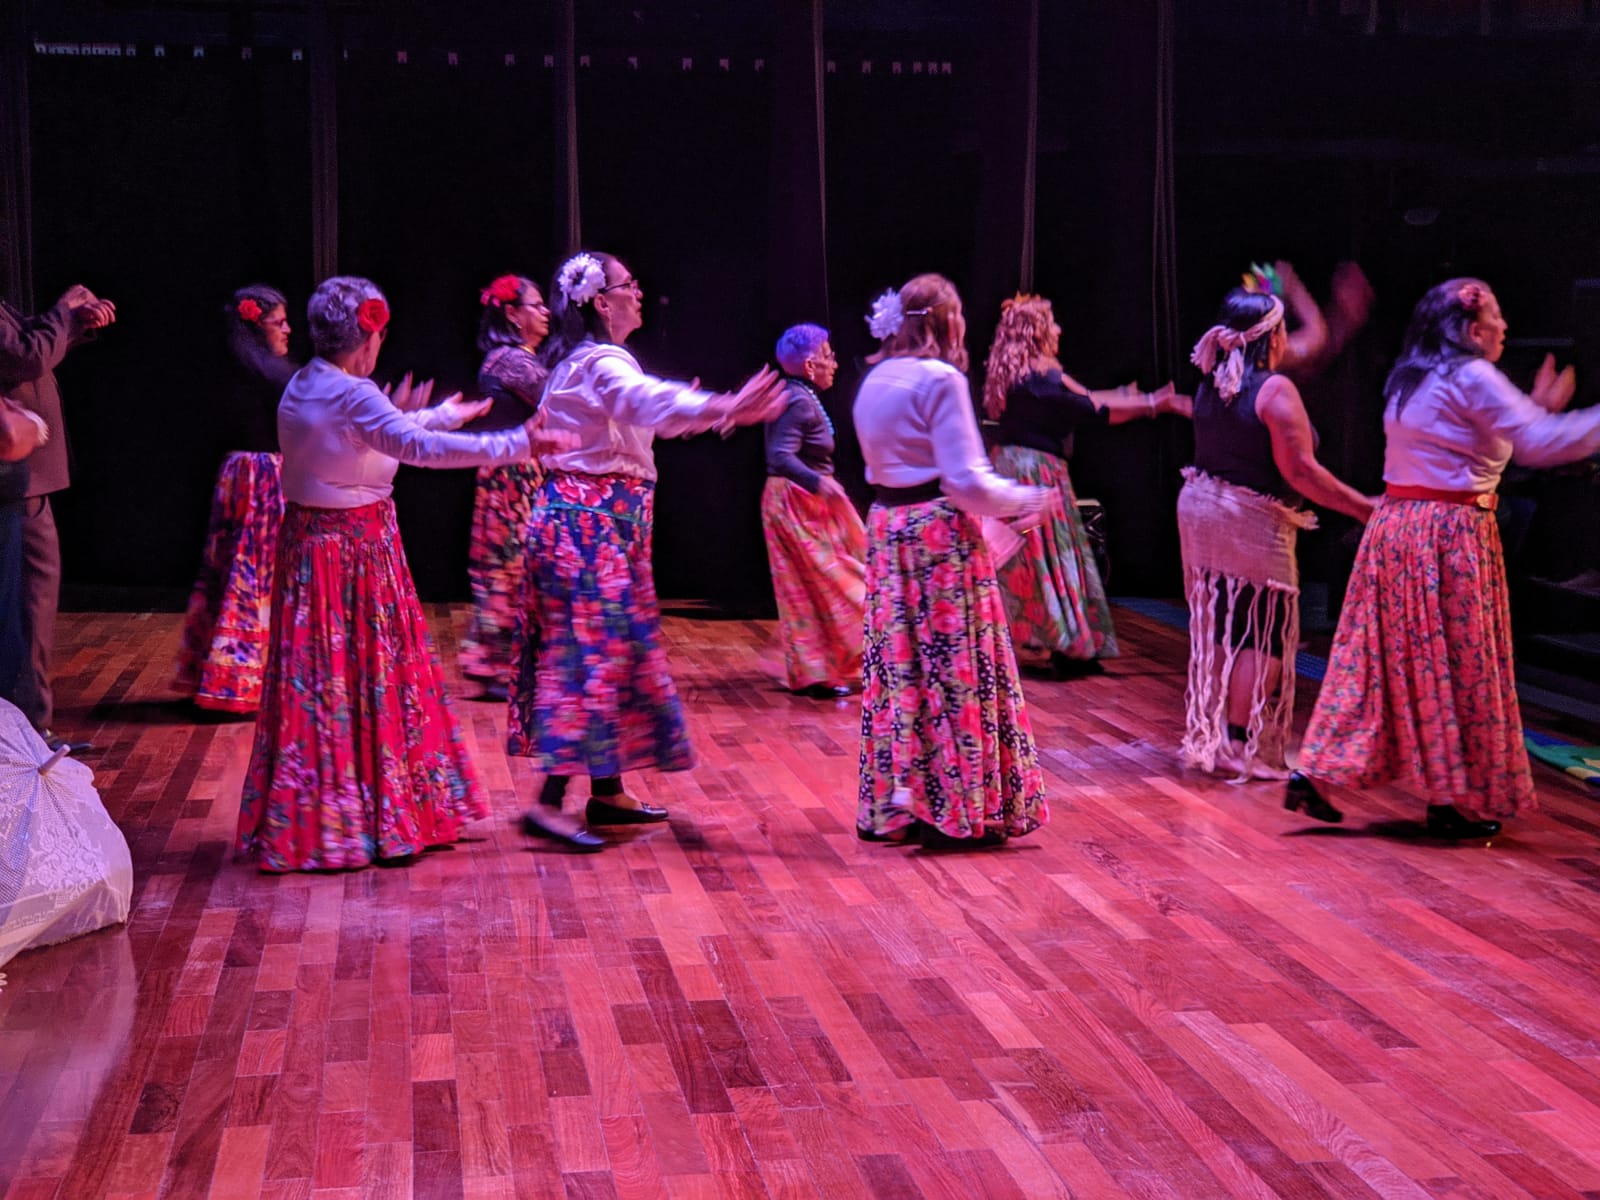 Na imagem, um grupo de idosas realiza uma dança em cima do palco, com uma luz rosa forte em cima delas. Elas vestem saias longas e floridas, e flores nas cabeças.